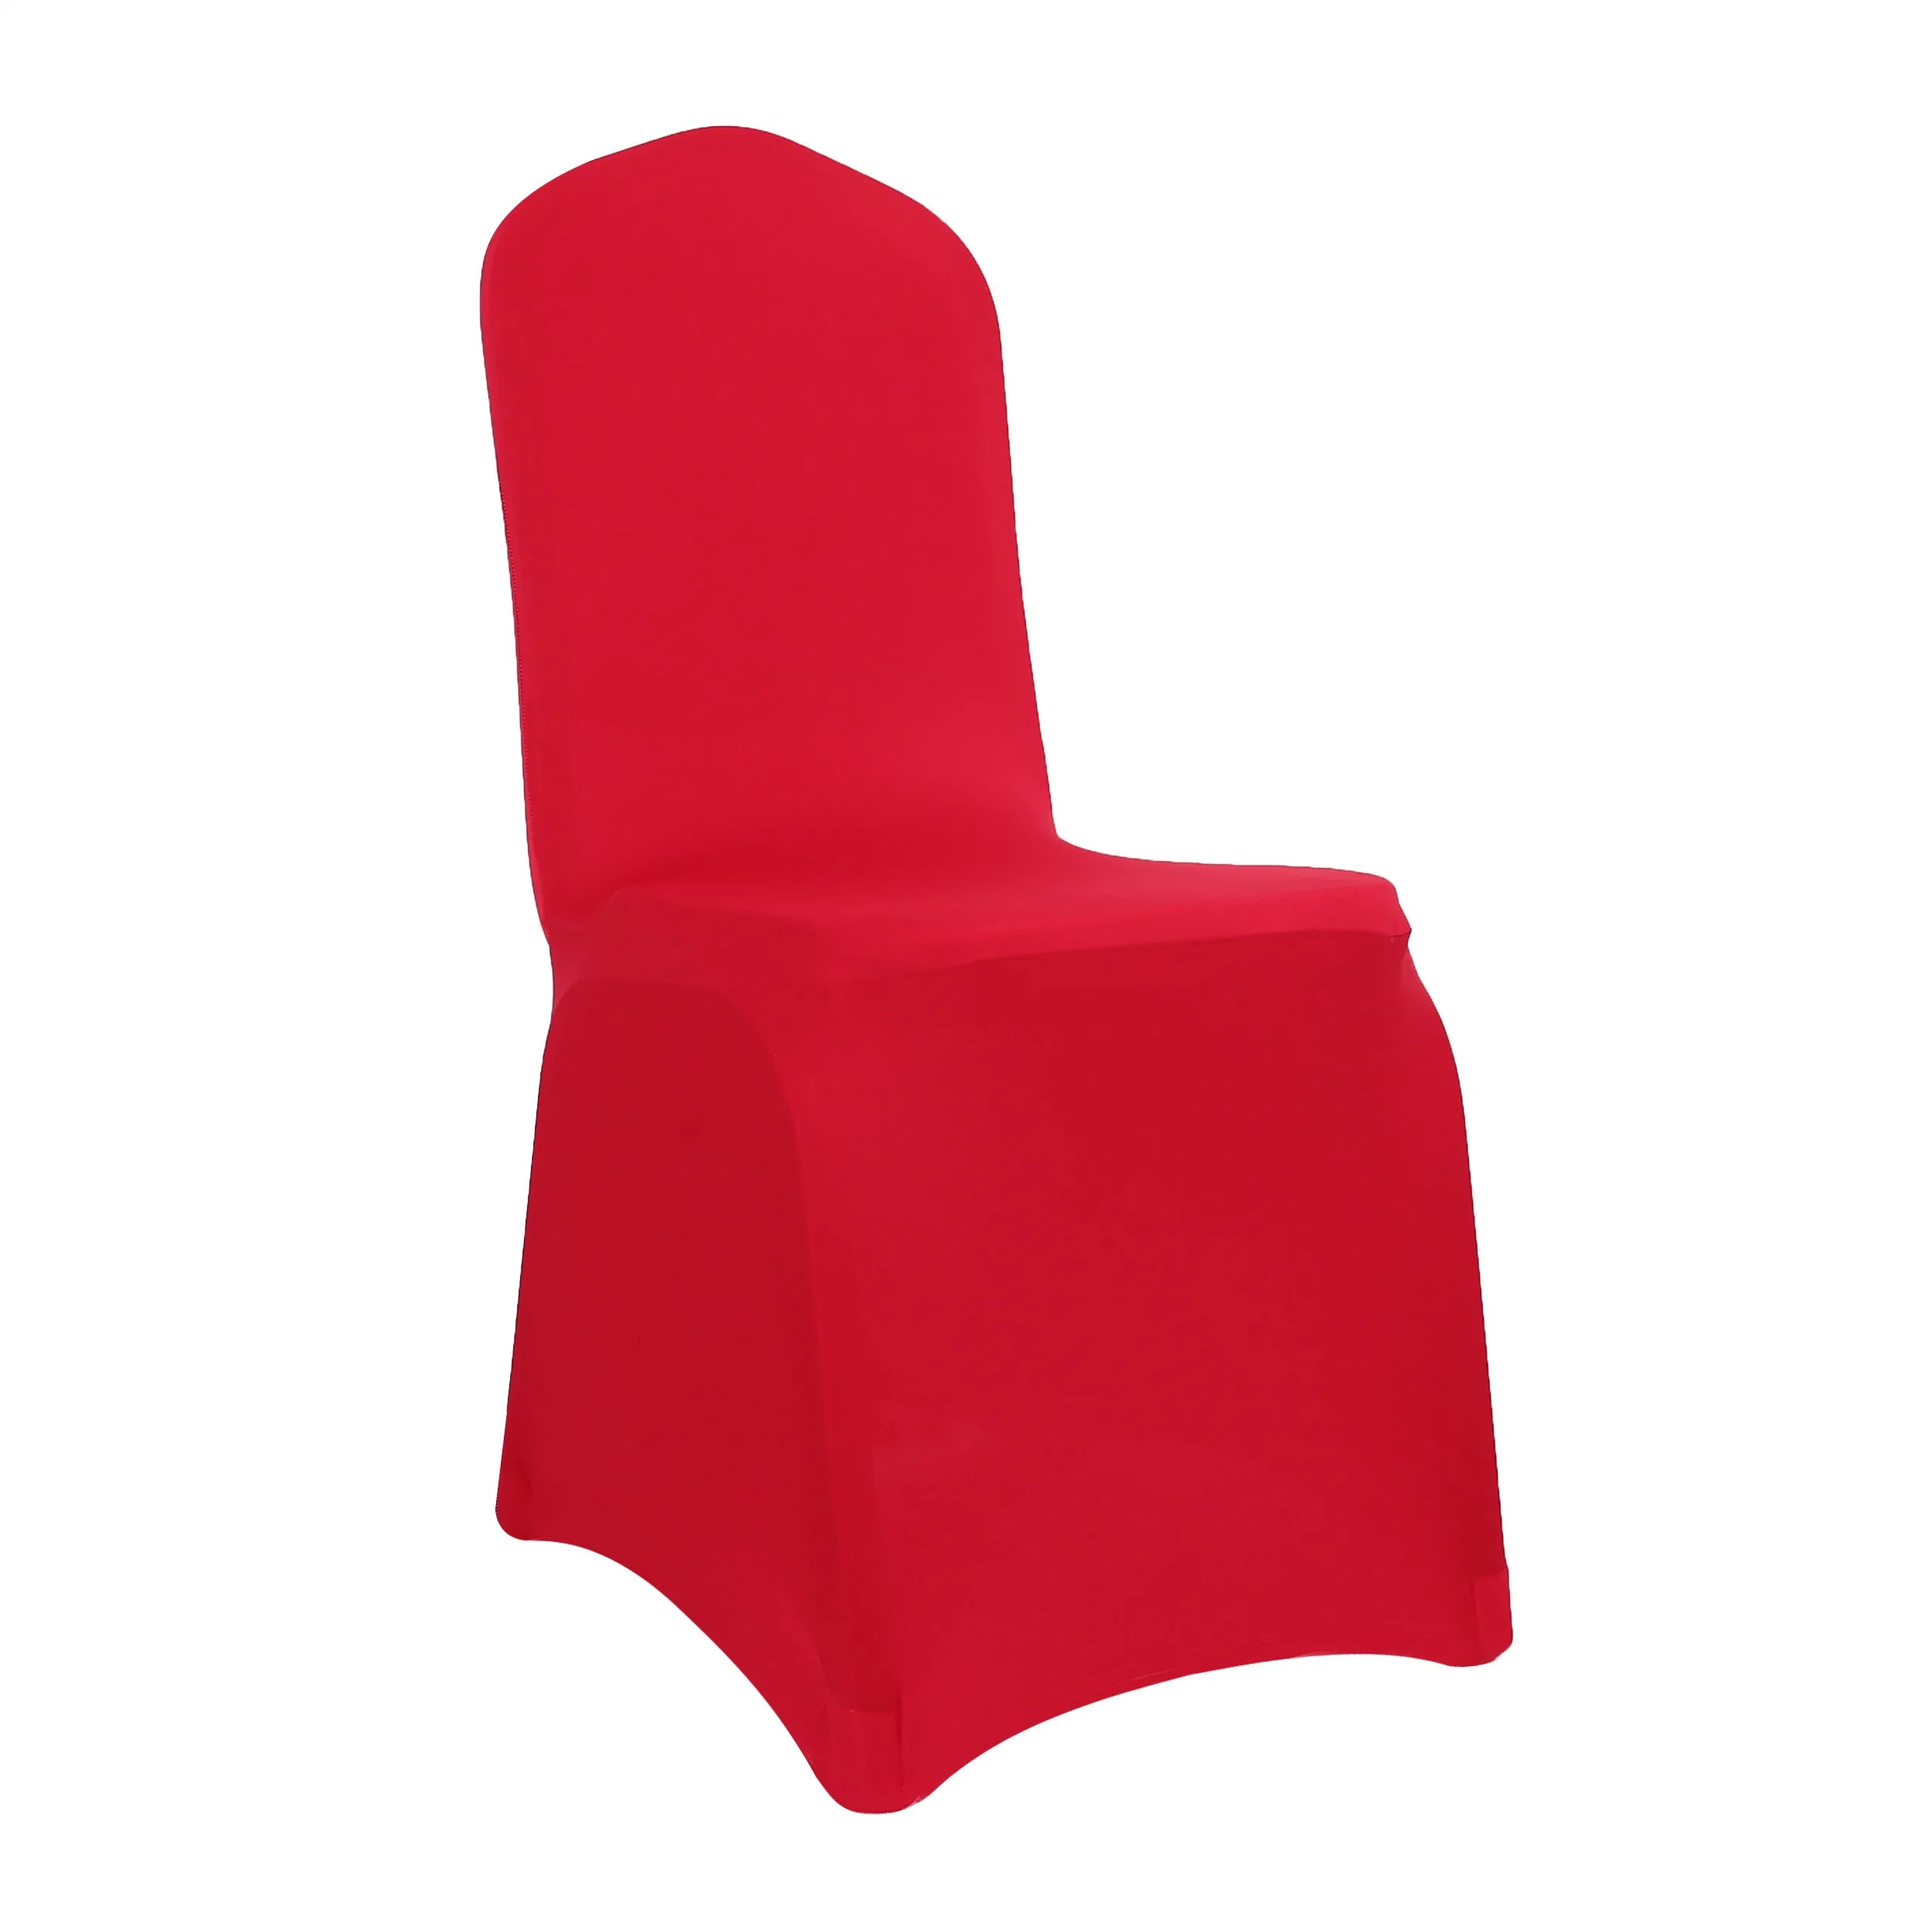 غطاء كرسي قابل للتمدد قوي من السباندكس للأعراس والحفلات